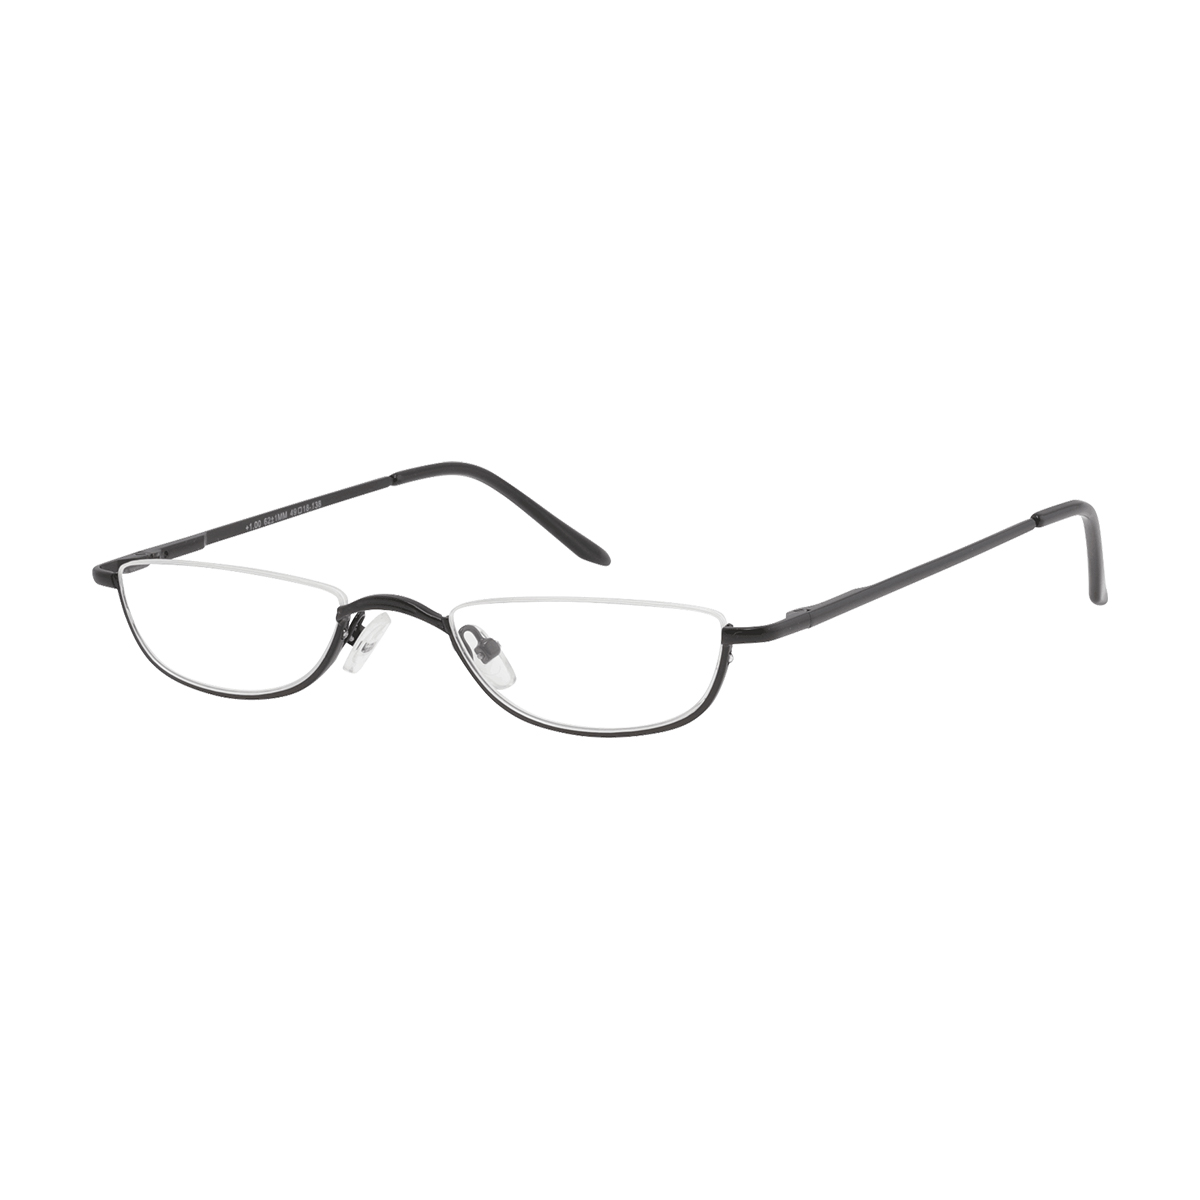 Daphnis - Rectangle Black Reading Glasses for Men & Women